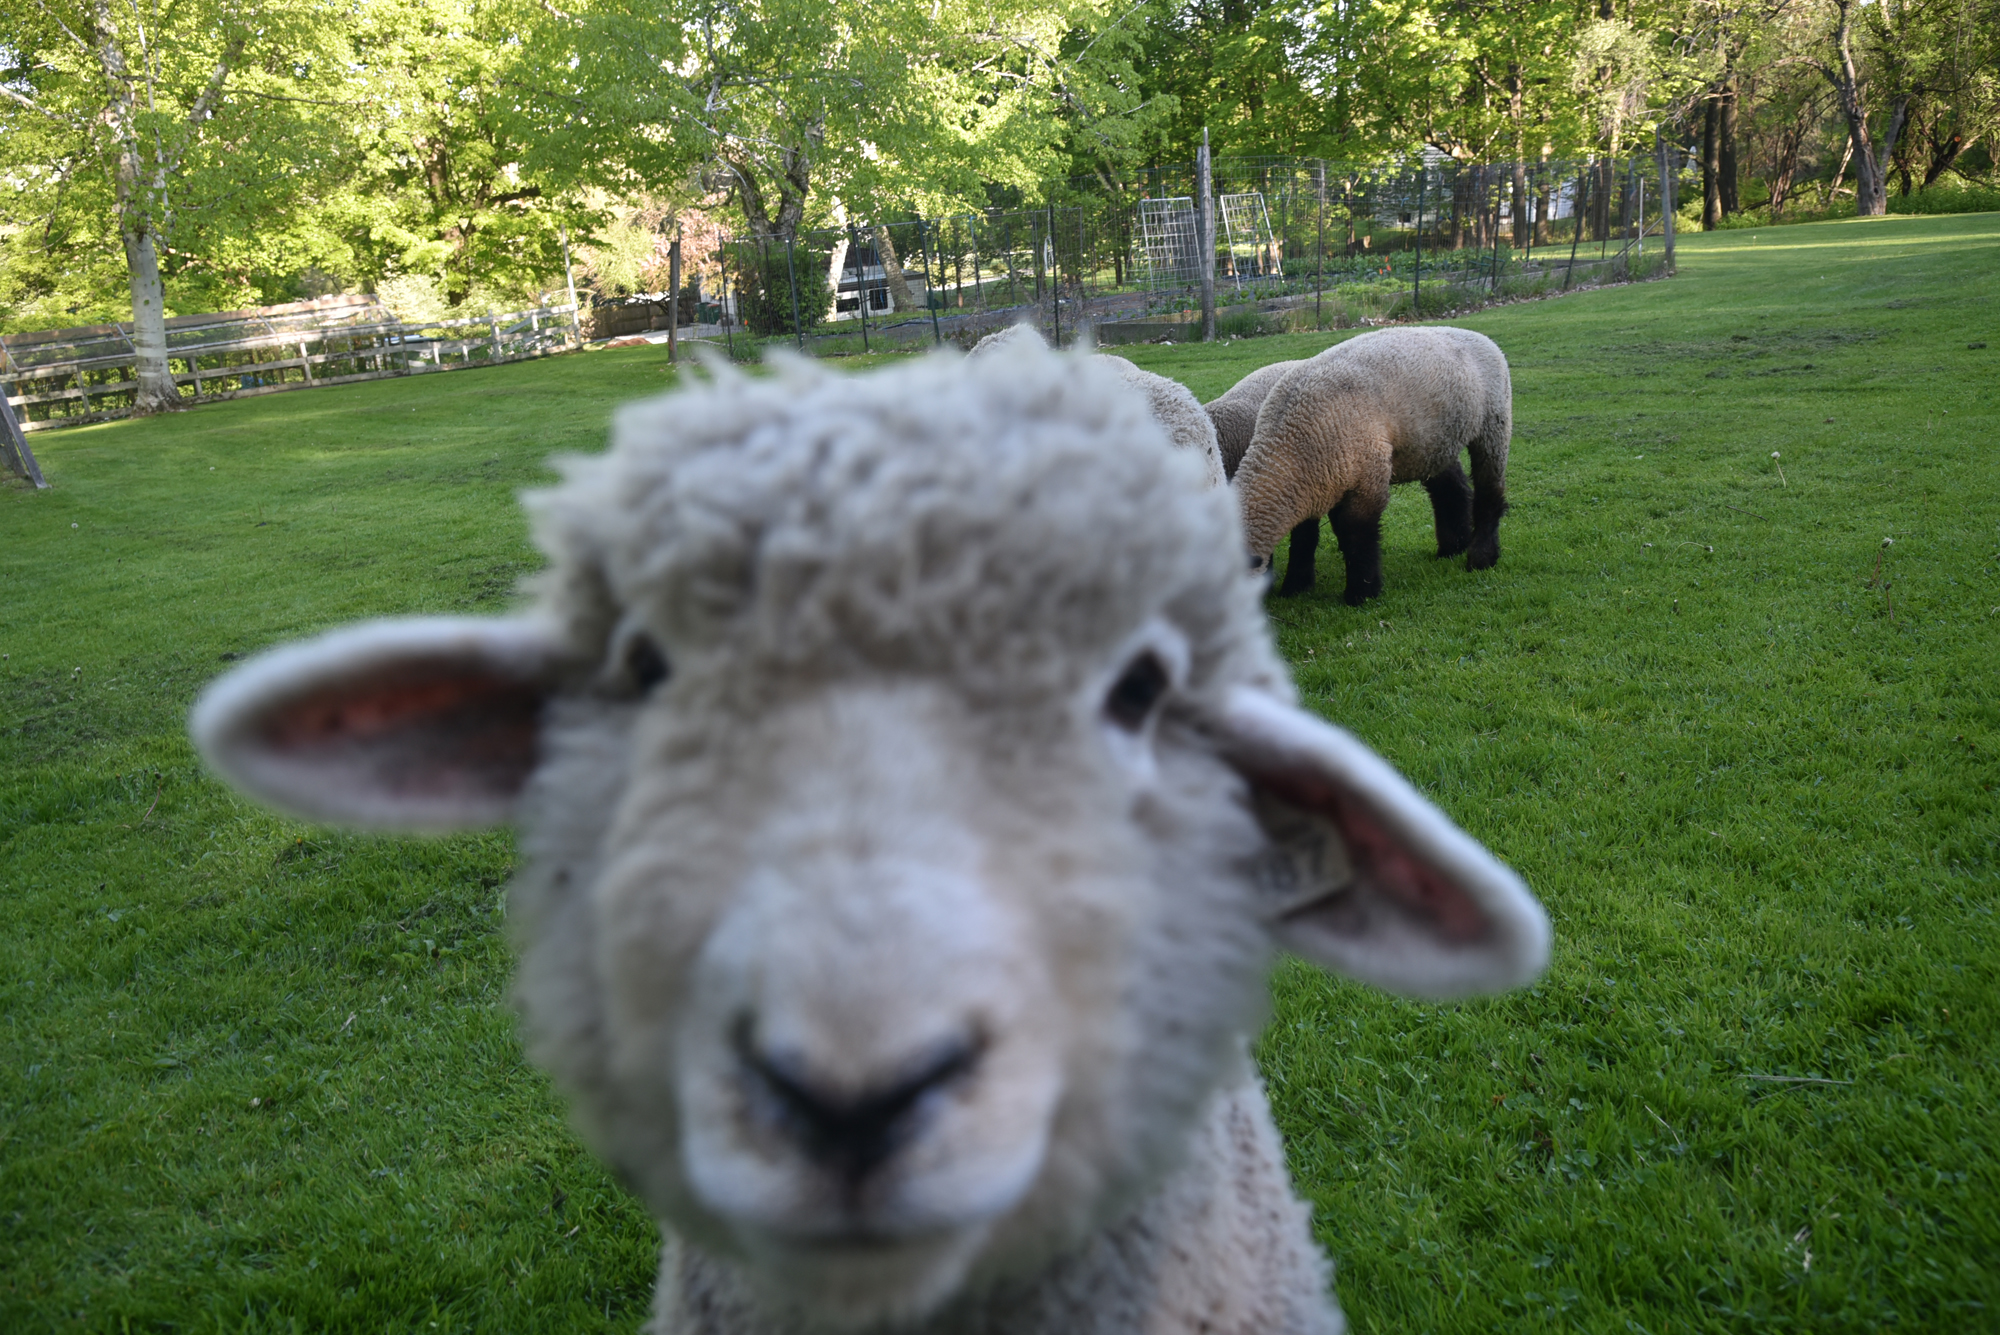 Curious Sheep